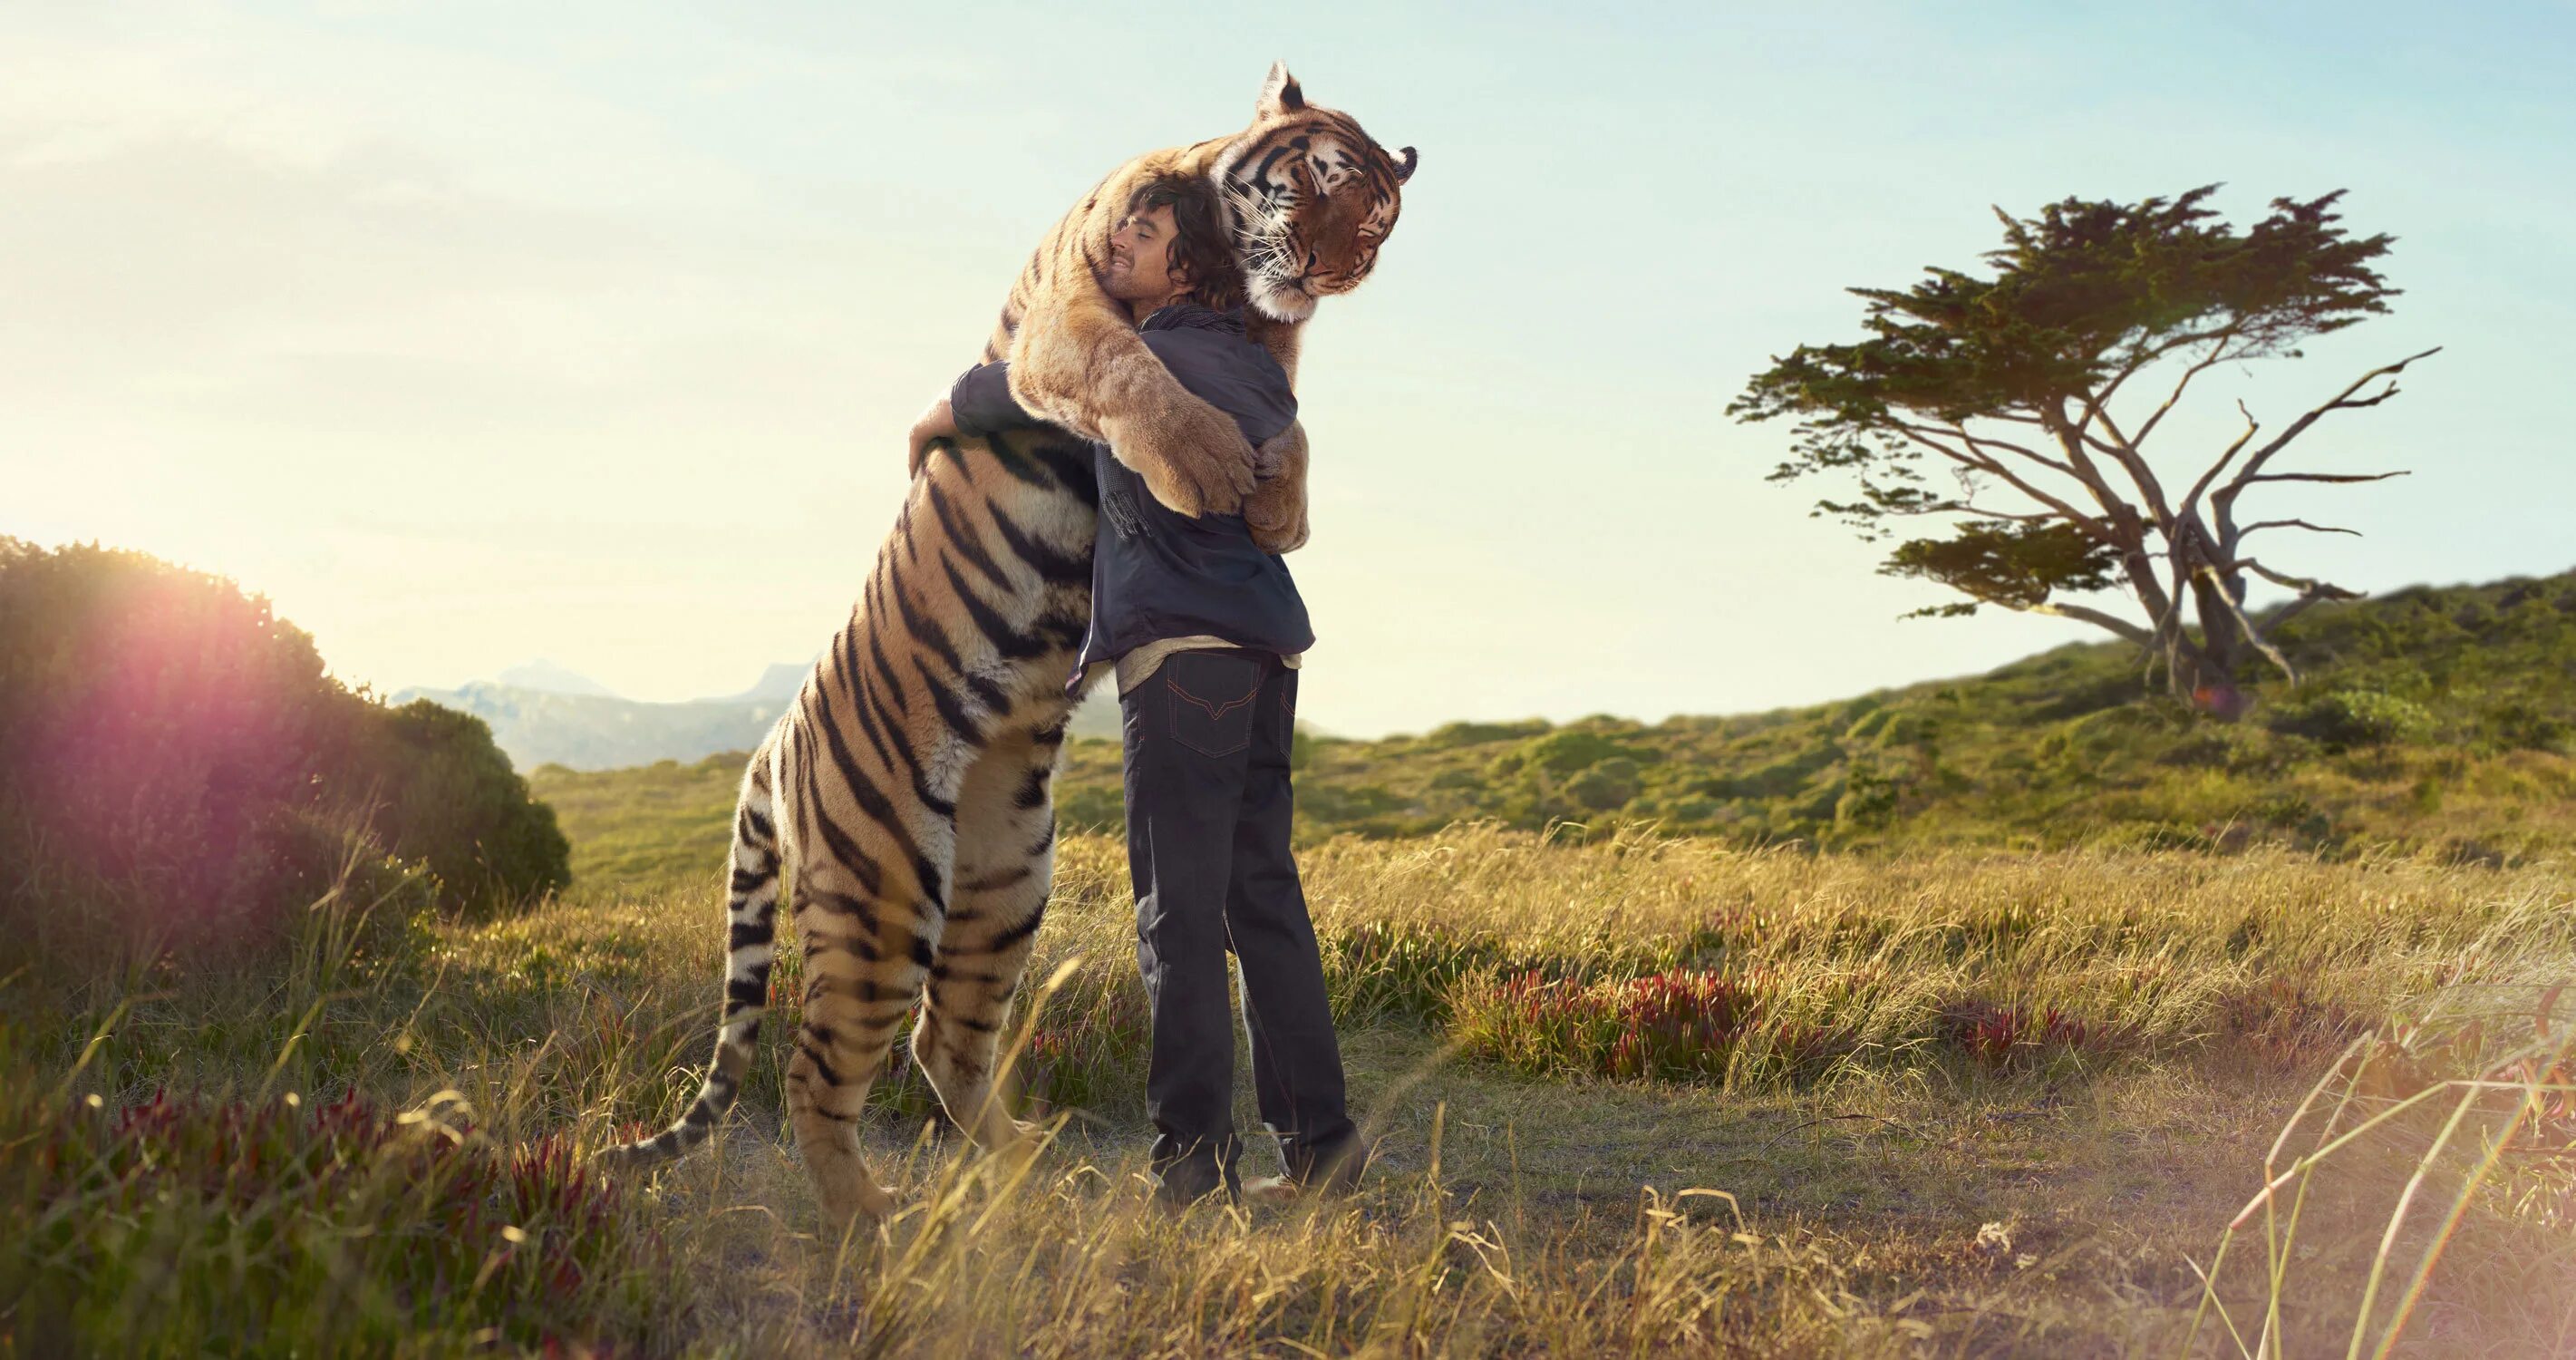 People and wildlife. Человек обнимает тигра. Тигр в природе. Люди и животные на природе.